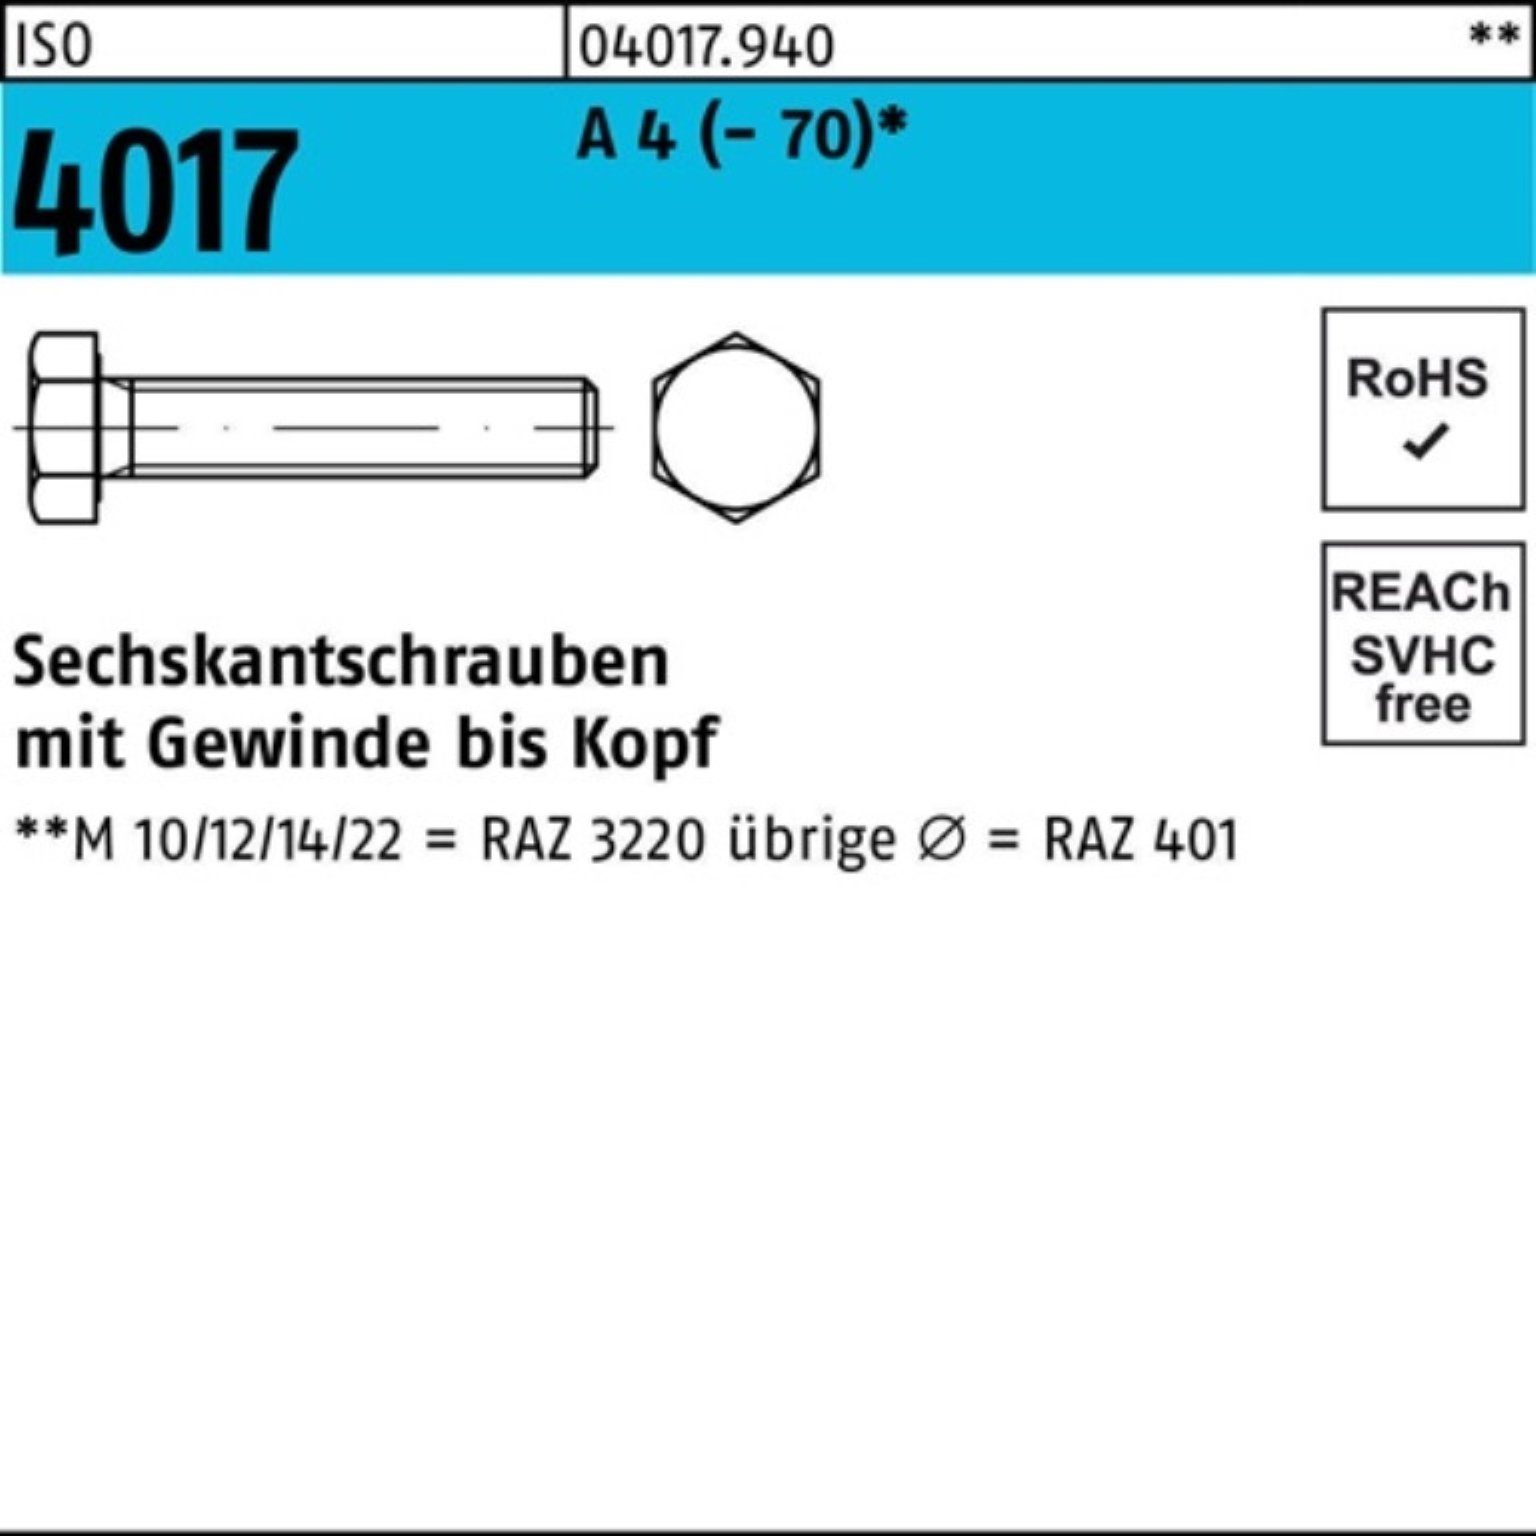 Bufab Sechskantschraube 200er Pack Sechskantschraube ISO 4017 VG M6x 20 A 4 (70) 200 Stück | Schrauben